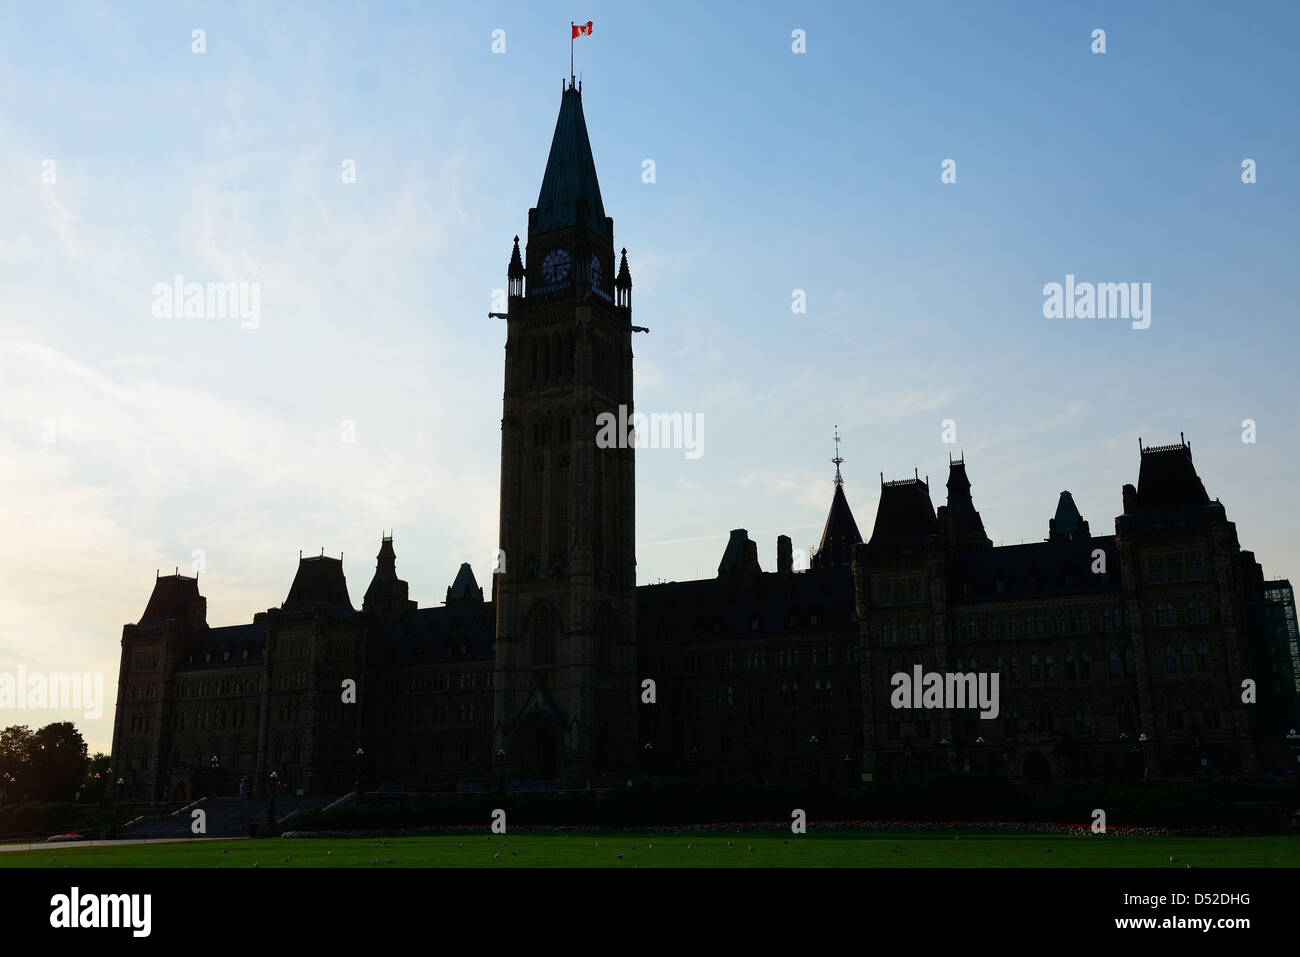 Parliament Hill Building silhouette in Ottawa, Canada Stock Photo